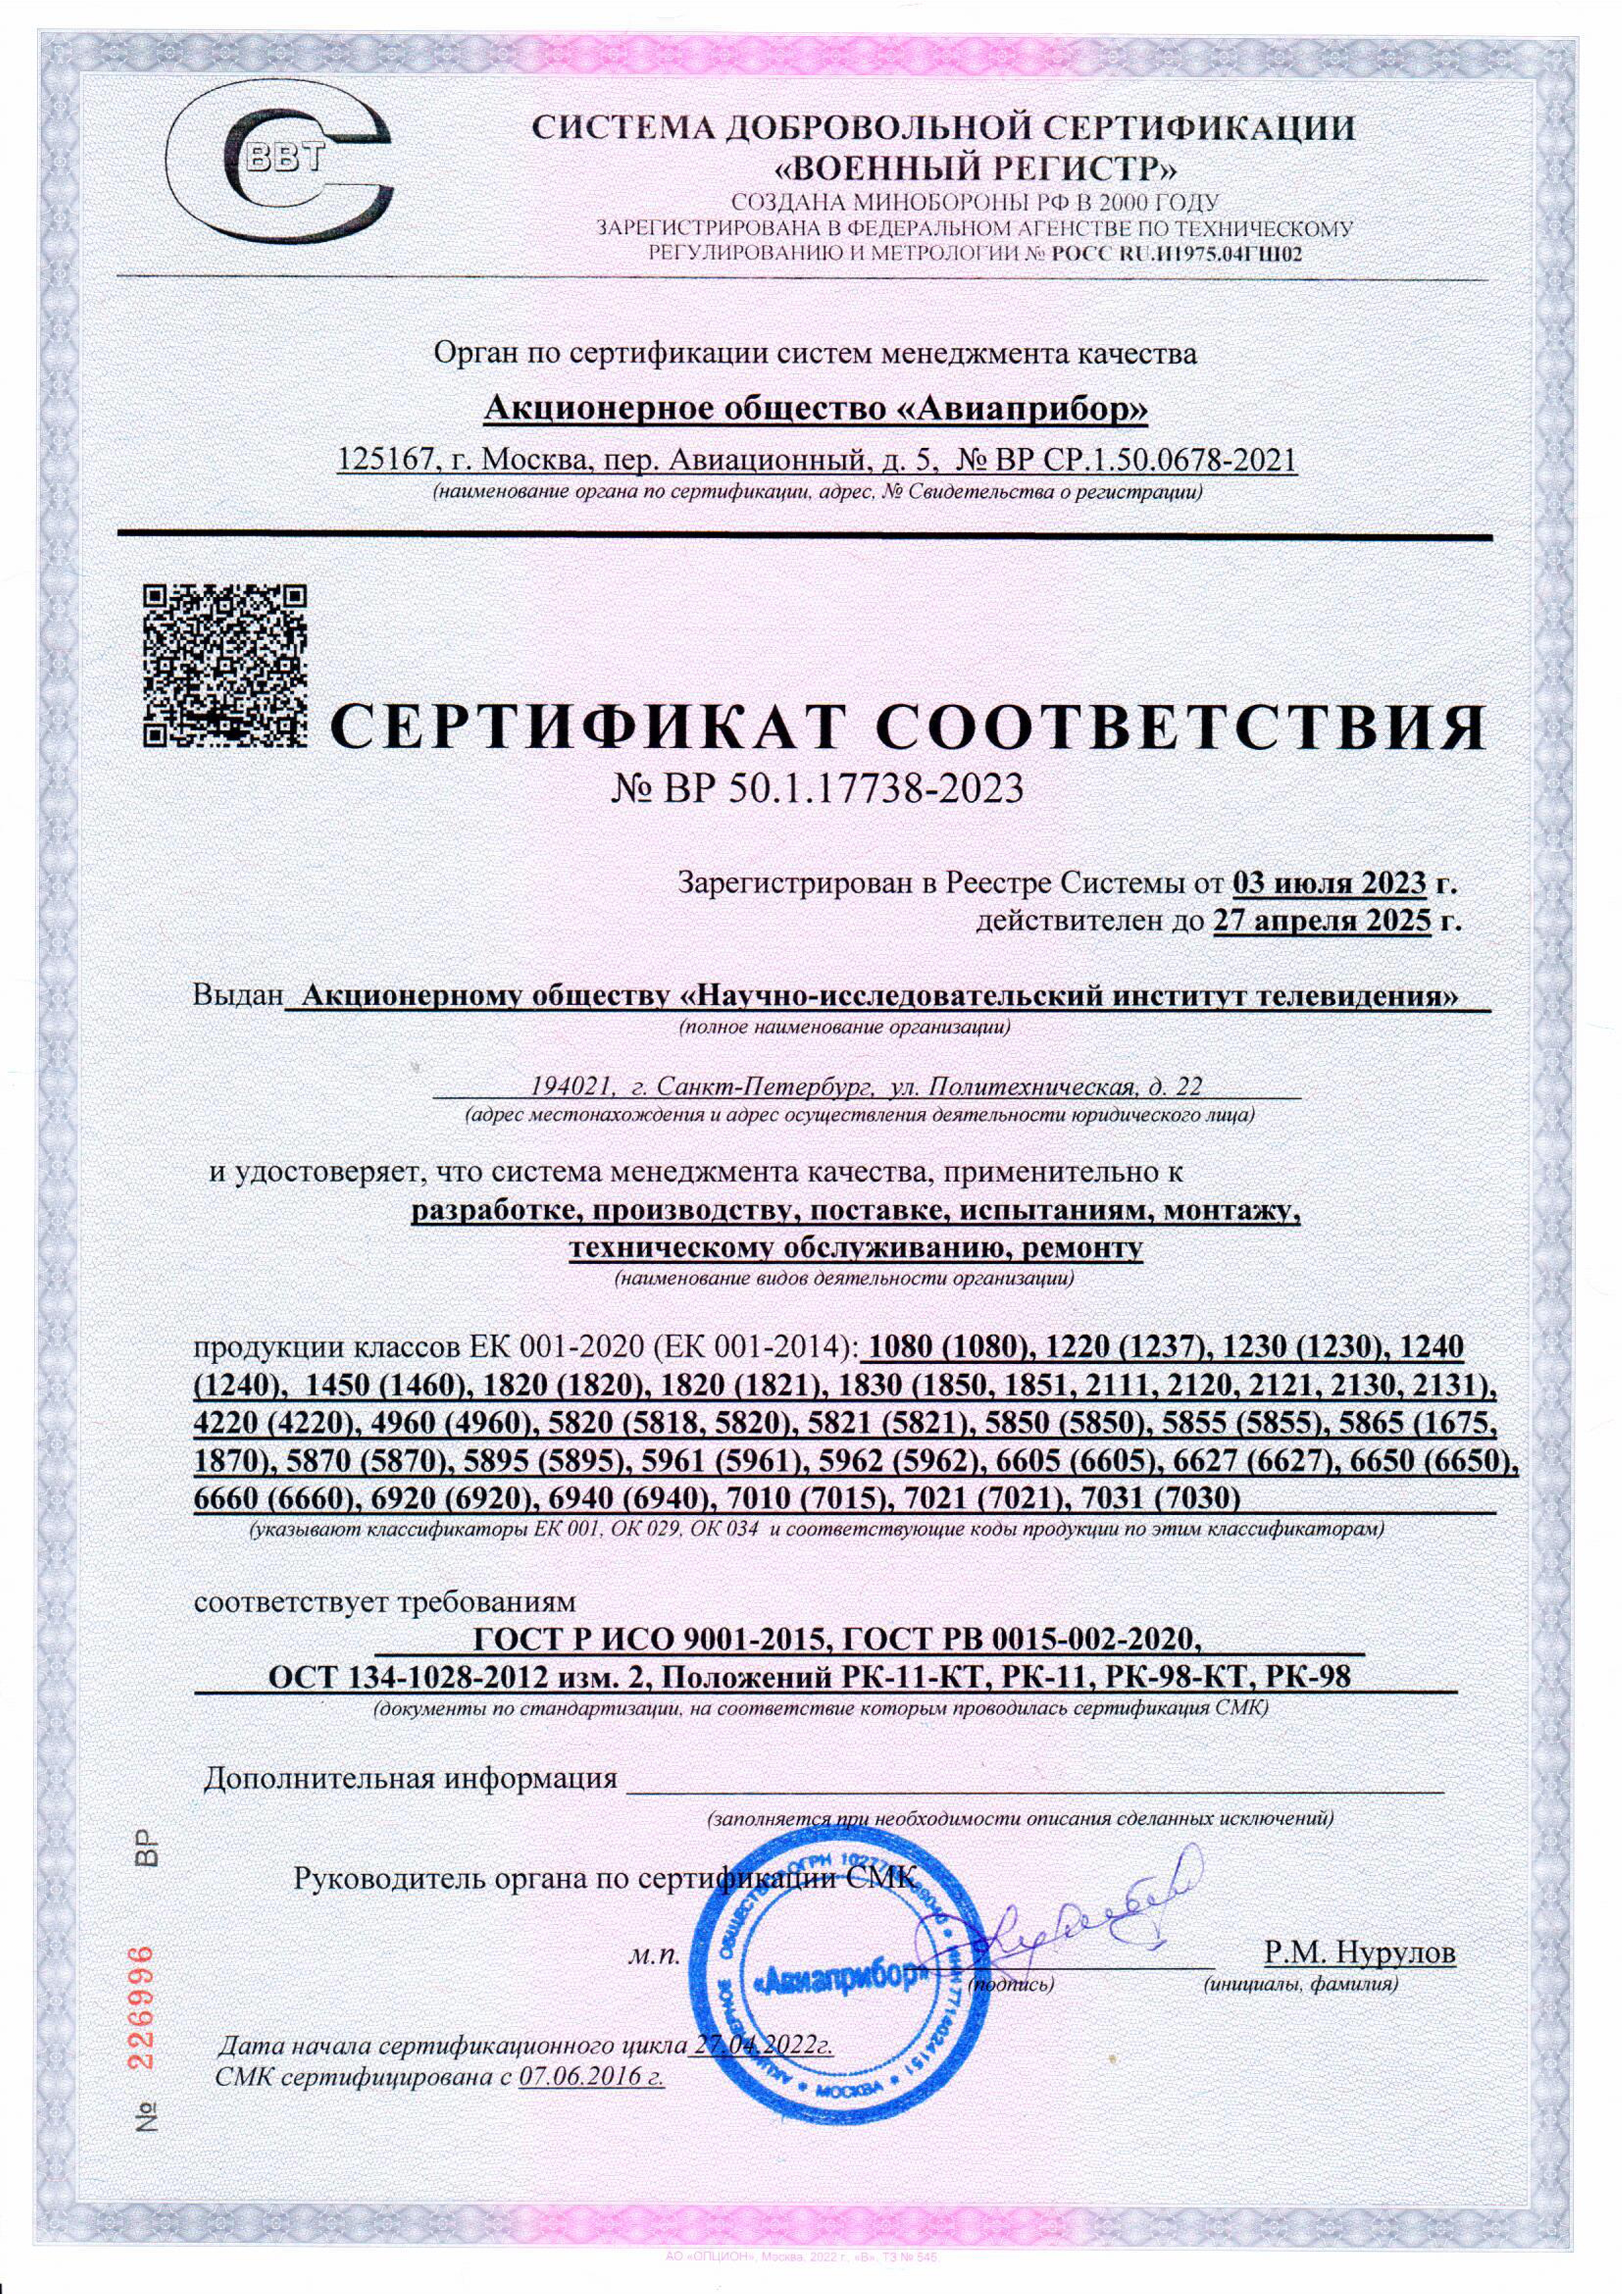 Сертификат соответствия № ВР 50.1.17738-2023
